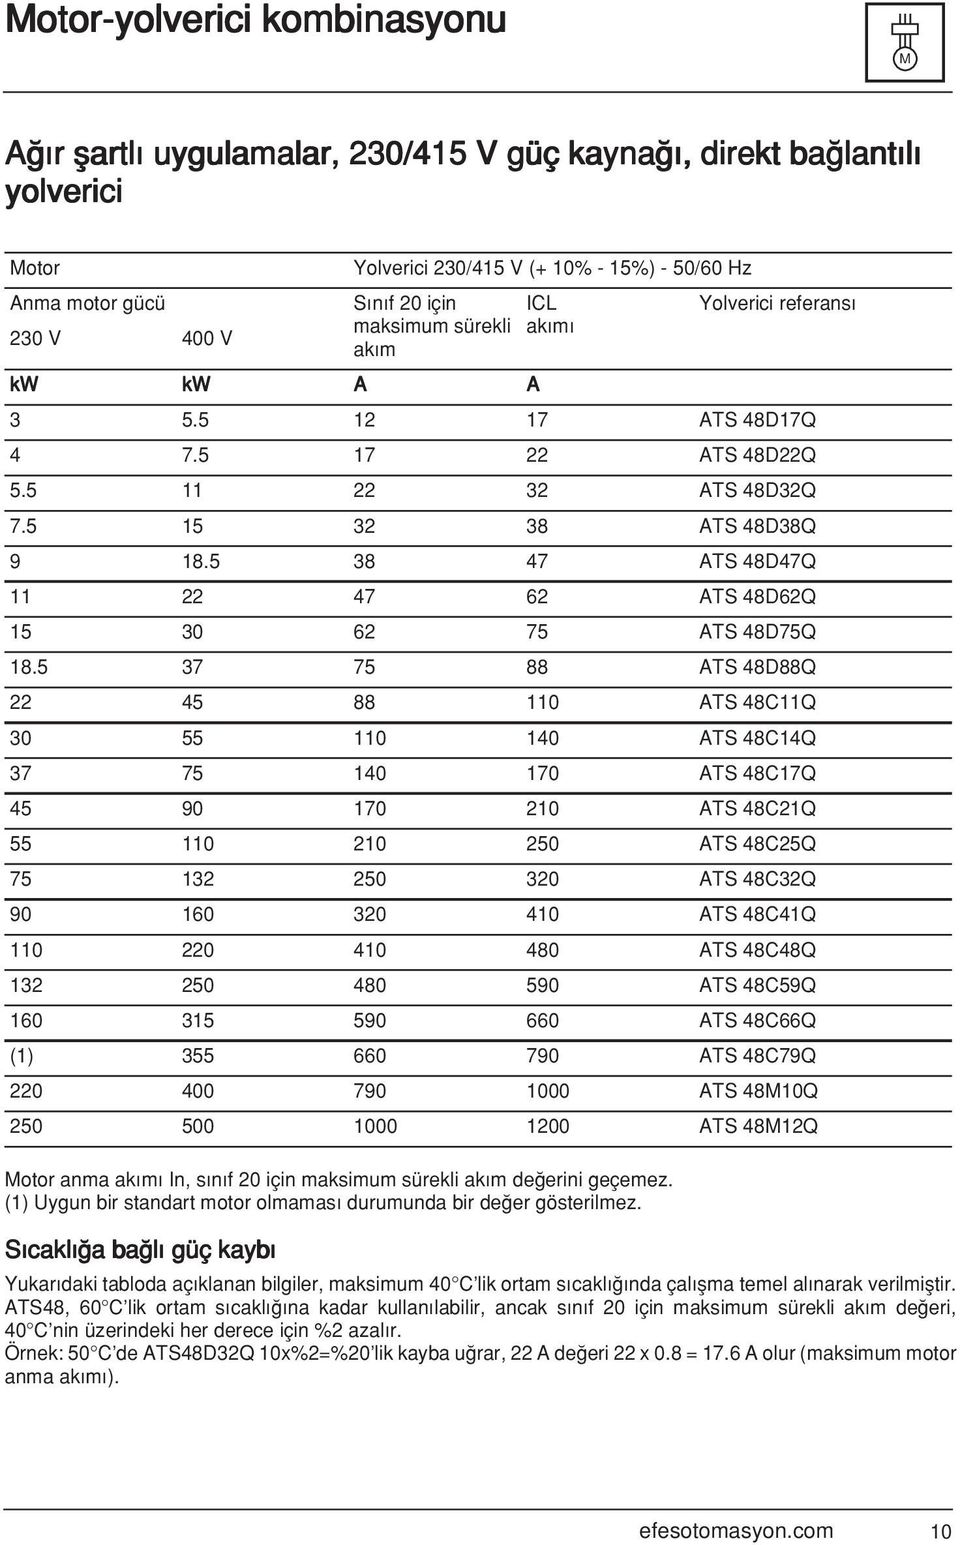 S cakl a ba l güç kayb Yolverici 230/415 V (+ 10% - 15%) - 50/60 Hz S n f 20 için maksimum sürekli ak m kw kw A A ICL ak m Yolverici referans 3 5.5 12 17 ATS 48D17Q 4 7.5 17 22 ATS 48D22Q 5.